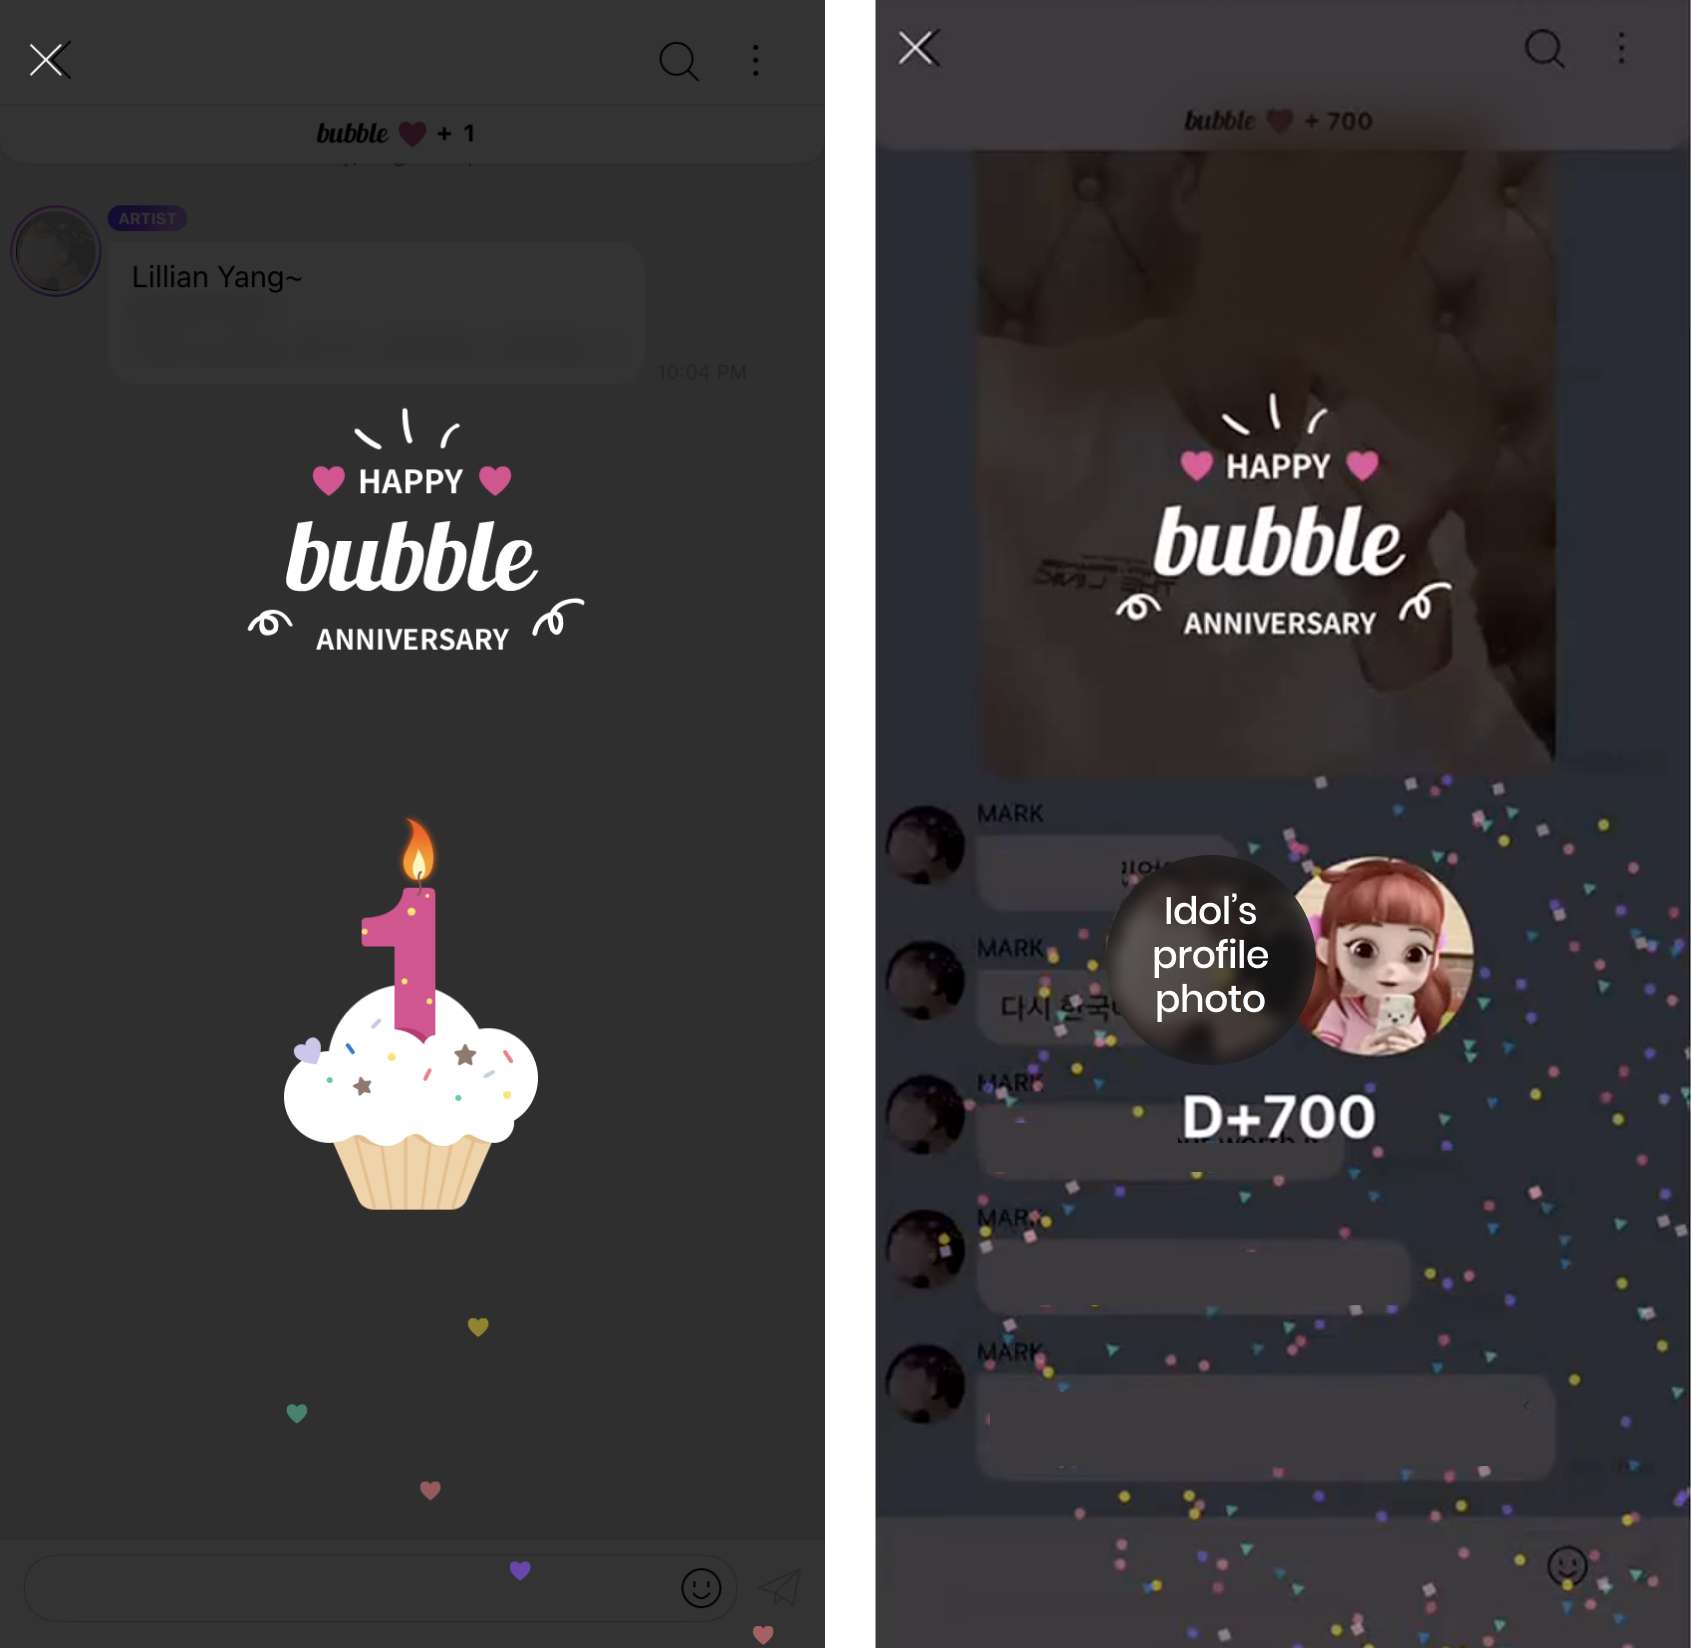 泡沫应用在其 "周年纪念 "信息中使用了全屏模式叠加，以庆祝粉丝连续订阅的特殊日子。